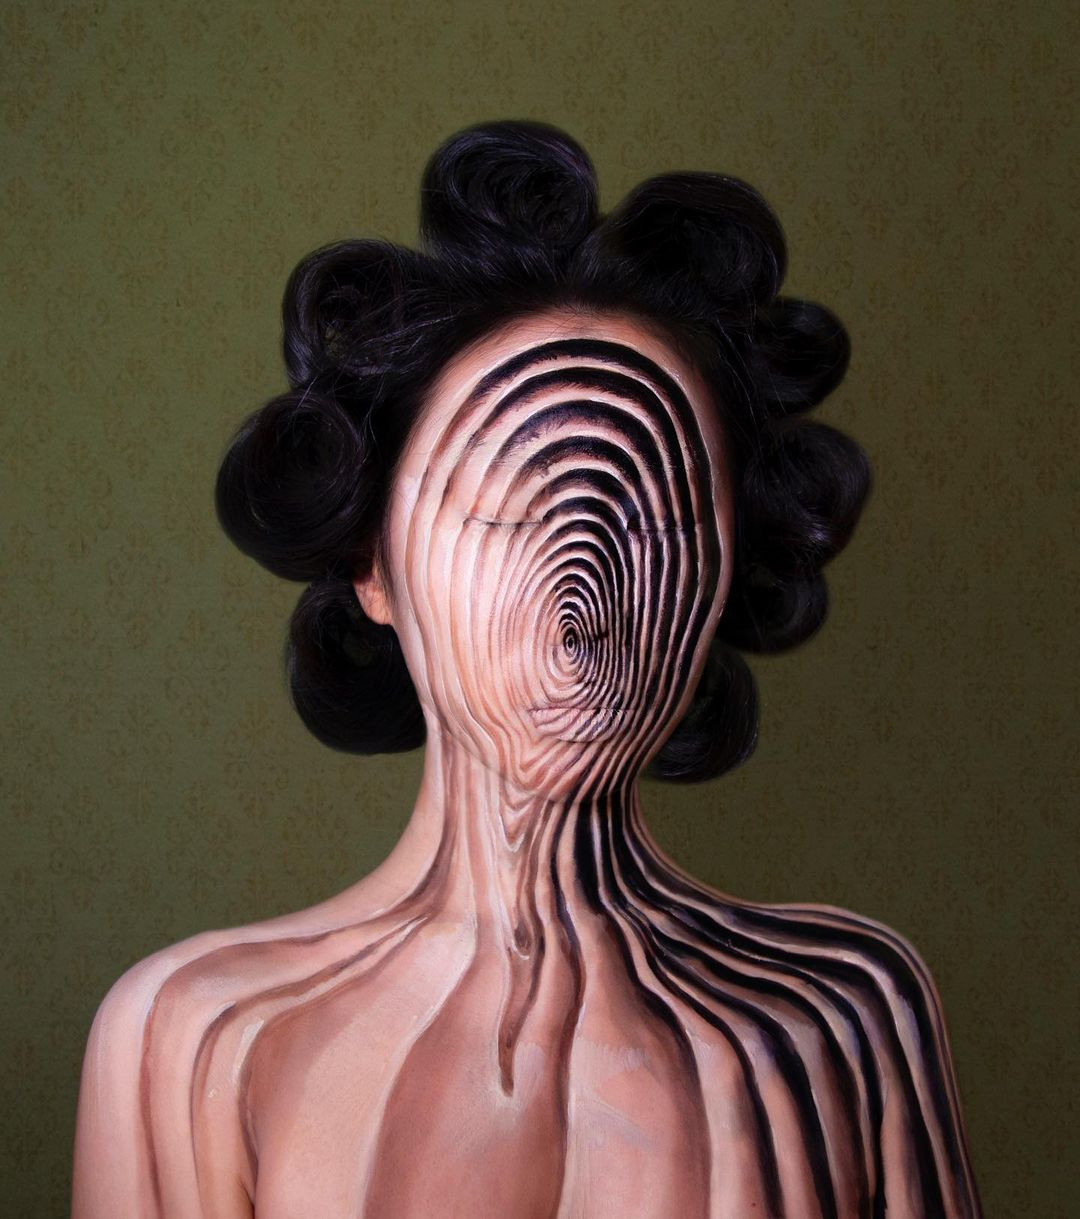 Южнокорейская художница превращает своё лицо в потрясающие оптические иллюзии